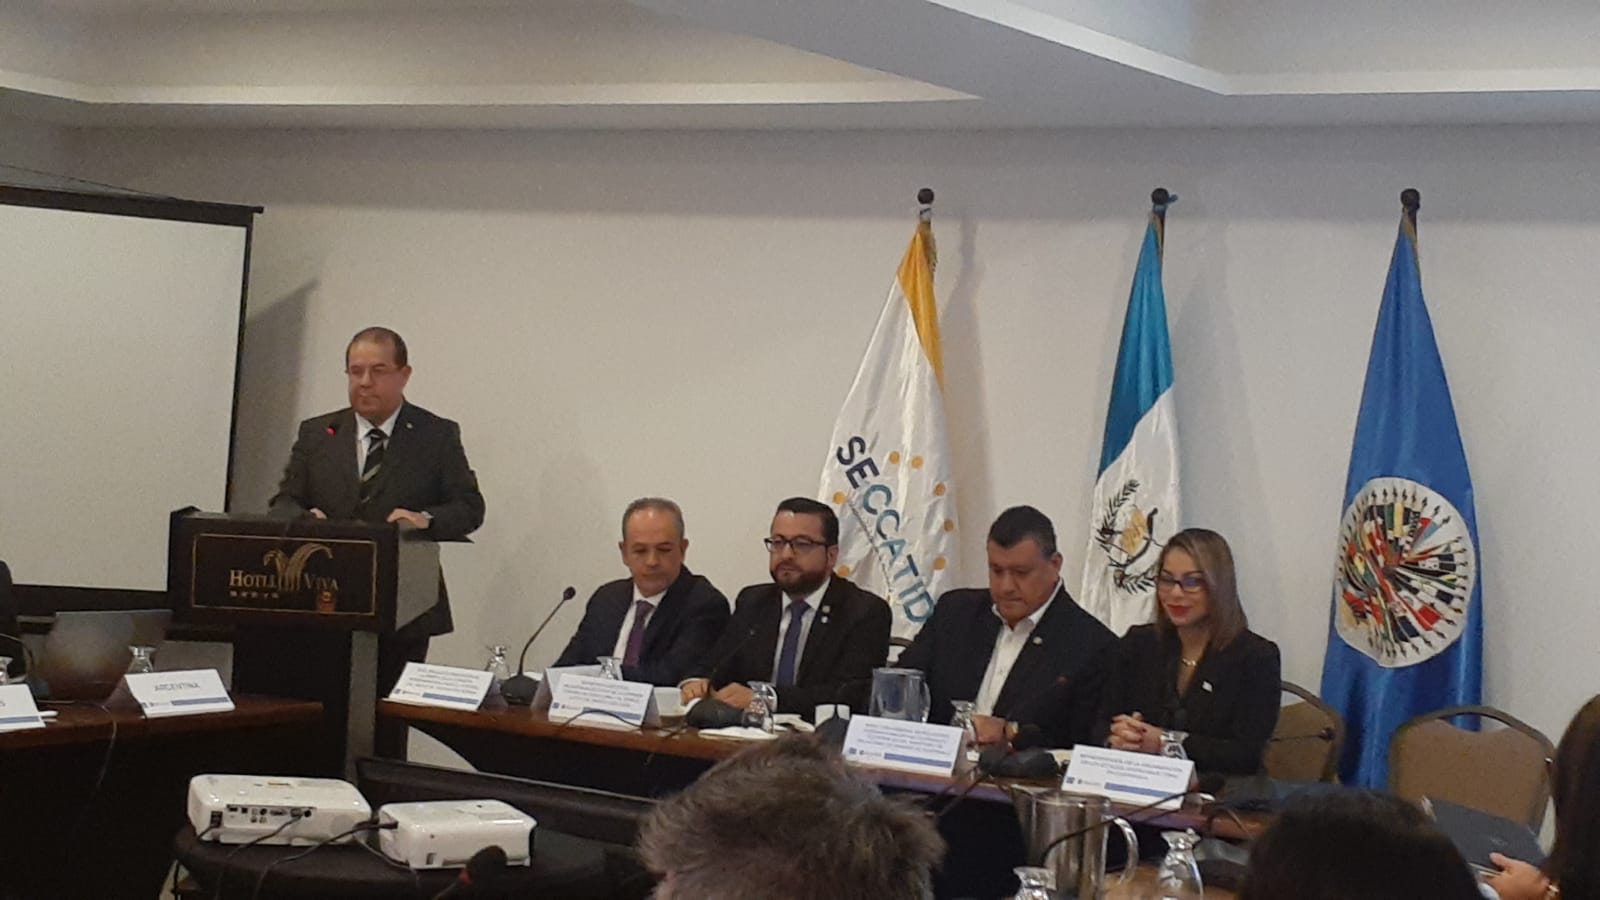 El Representante, Diego Paz, acompañó al Vicepresidente de la República, Licenciado Guillermo Castillo, en la ceremonia inaugural de la reunión del Grupo de Expertos sobre Sustancias Químicas y Productos Farmacéuticos, organizado por CICAD/OEA y la SECCATID, con el Ministerio de Relaciones Exteriores (MINEX) y la Misión Permanente de Guatemala ante la OEA(12 de octubre de 2022)